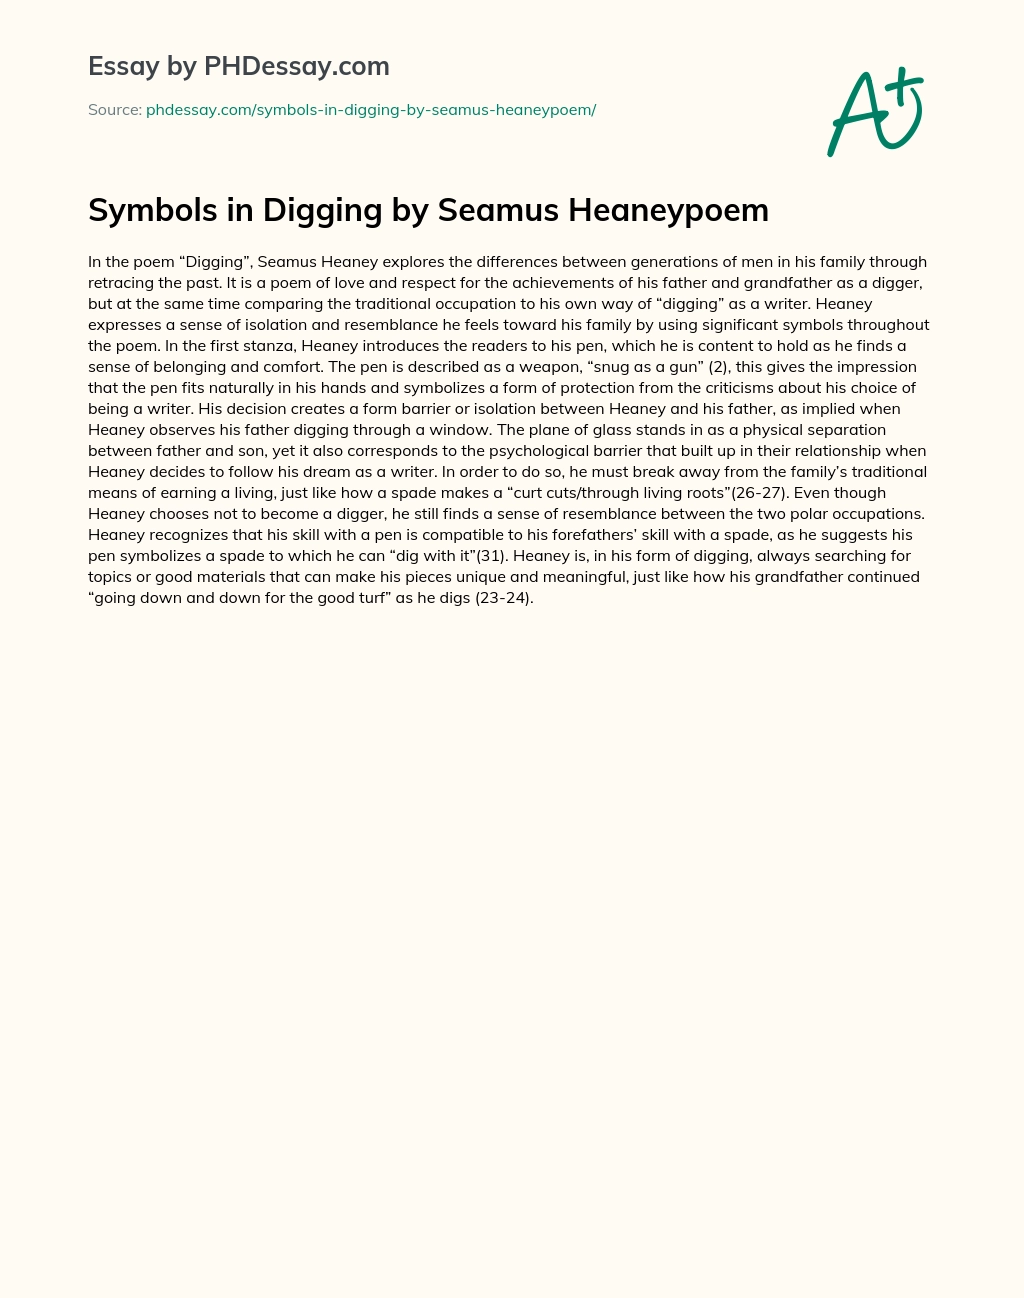 Symbols in Digging by Seamus Heaneypoem essay